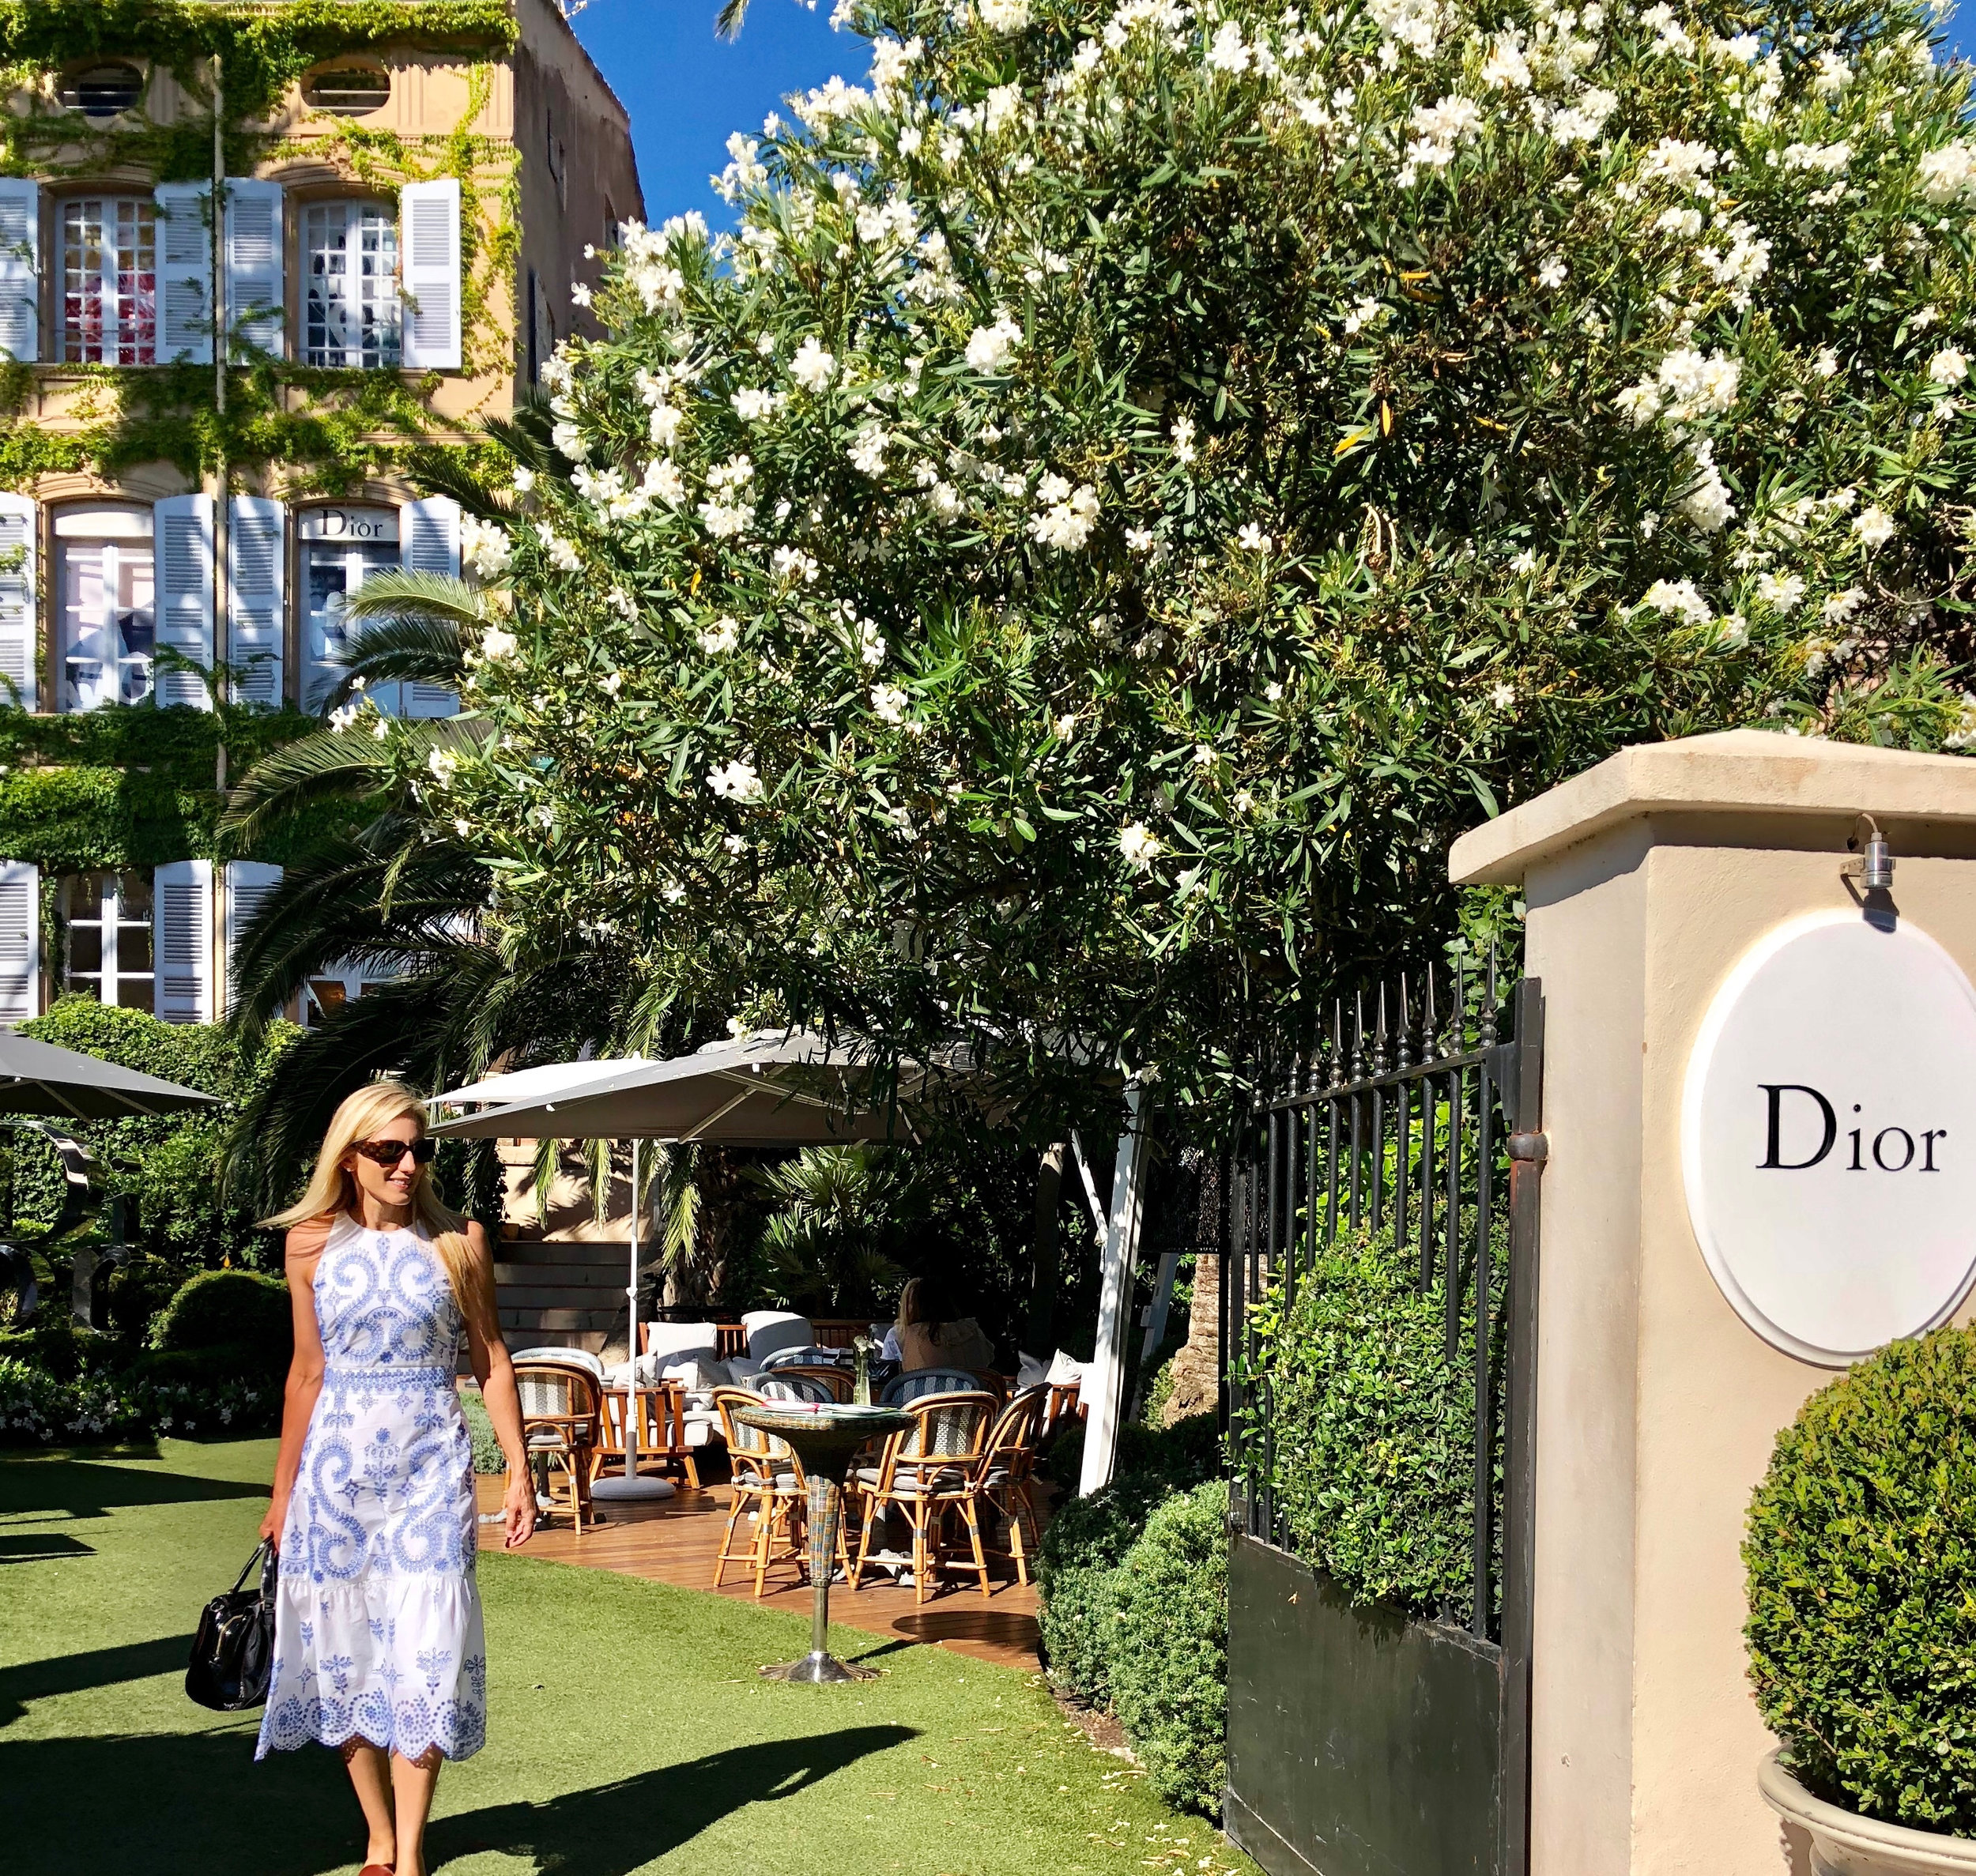 The Dior restaurant in St Tropez